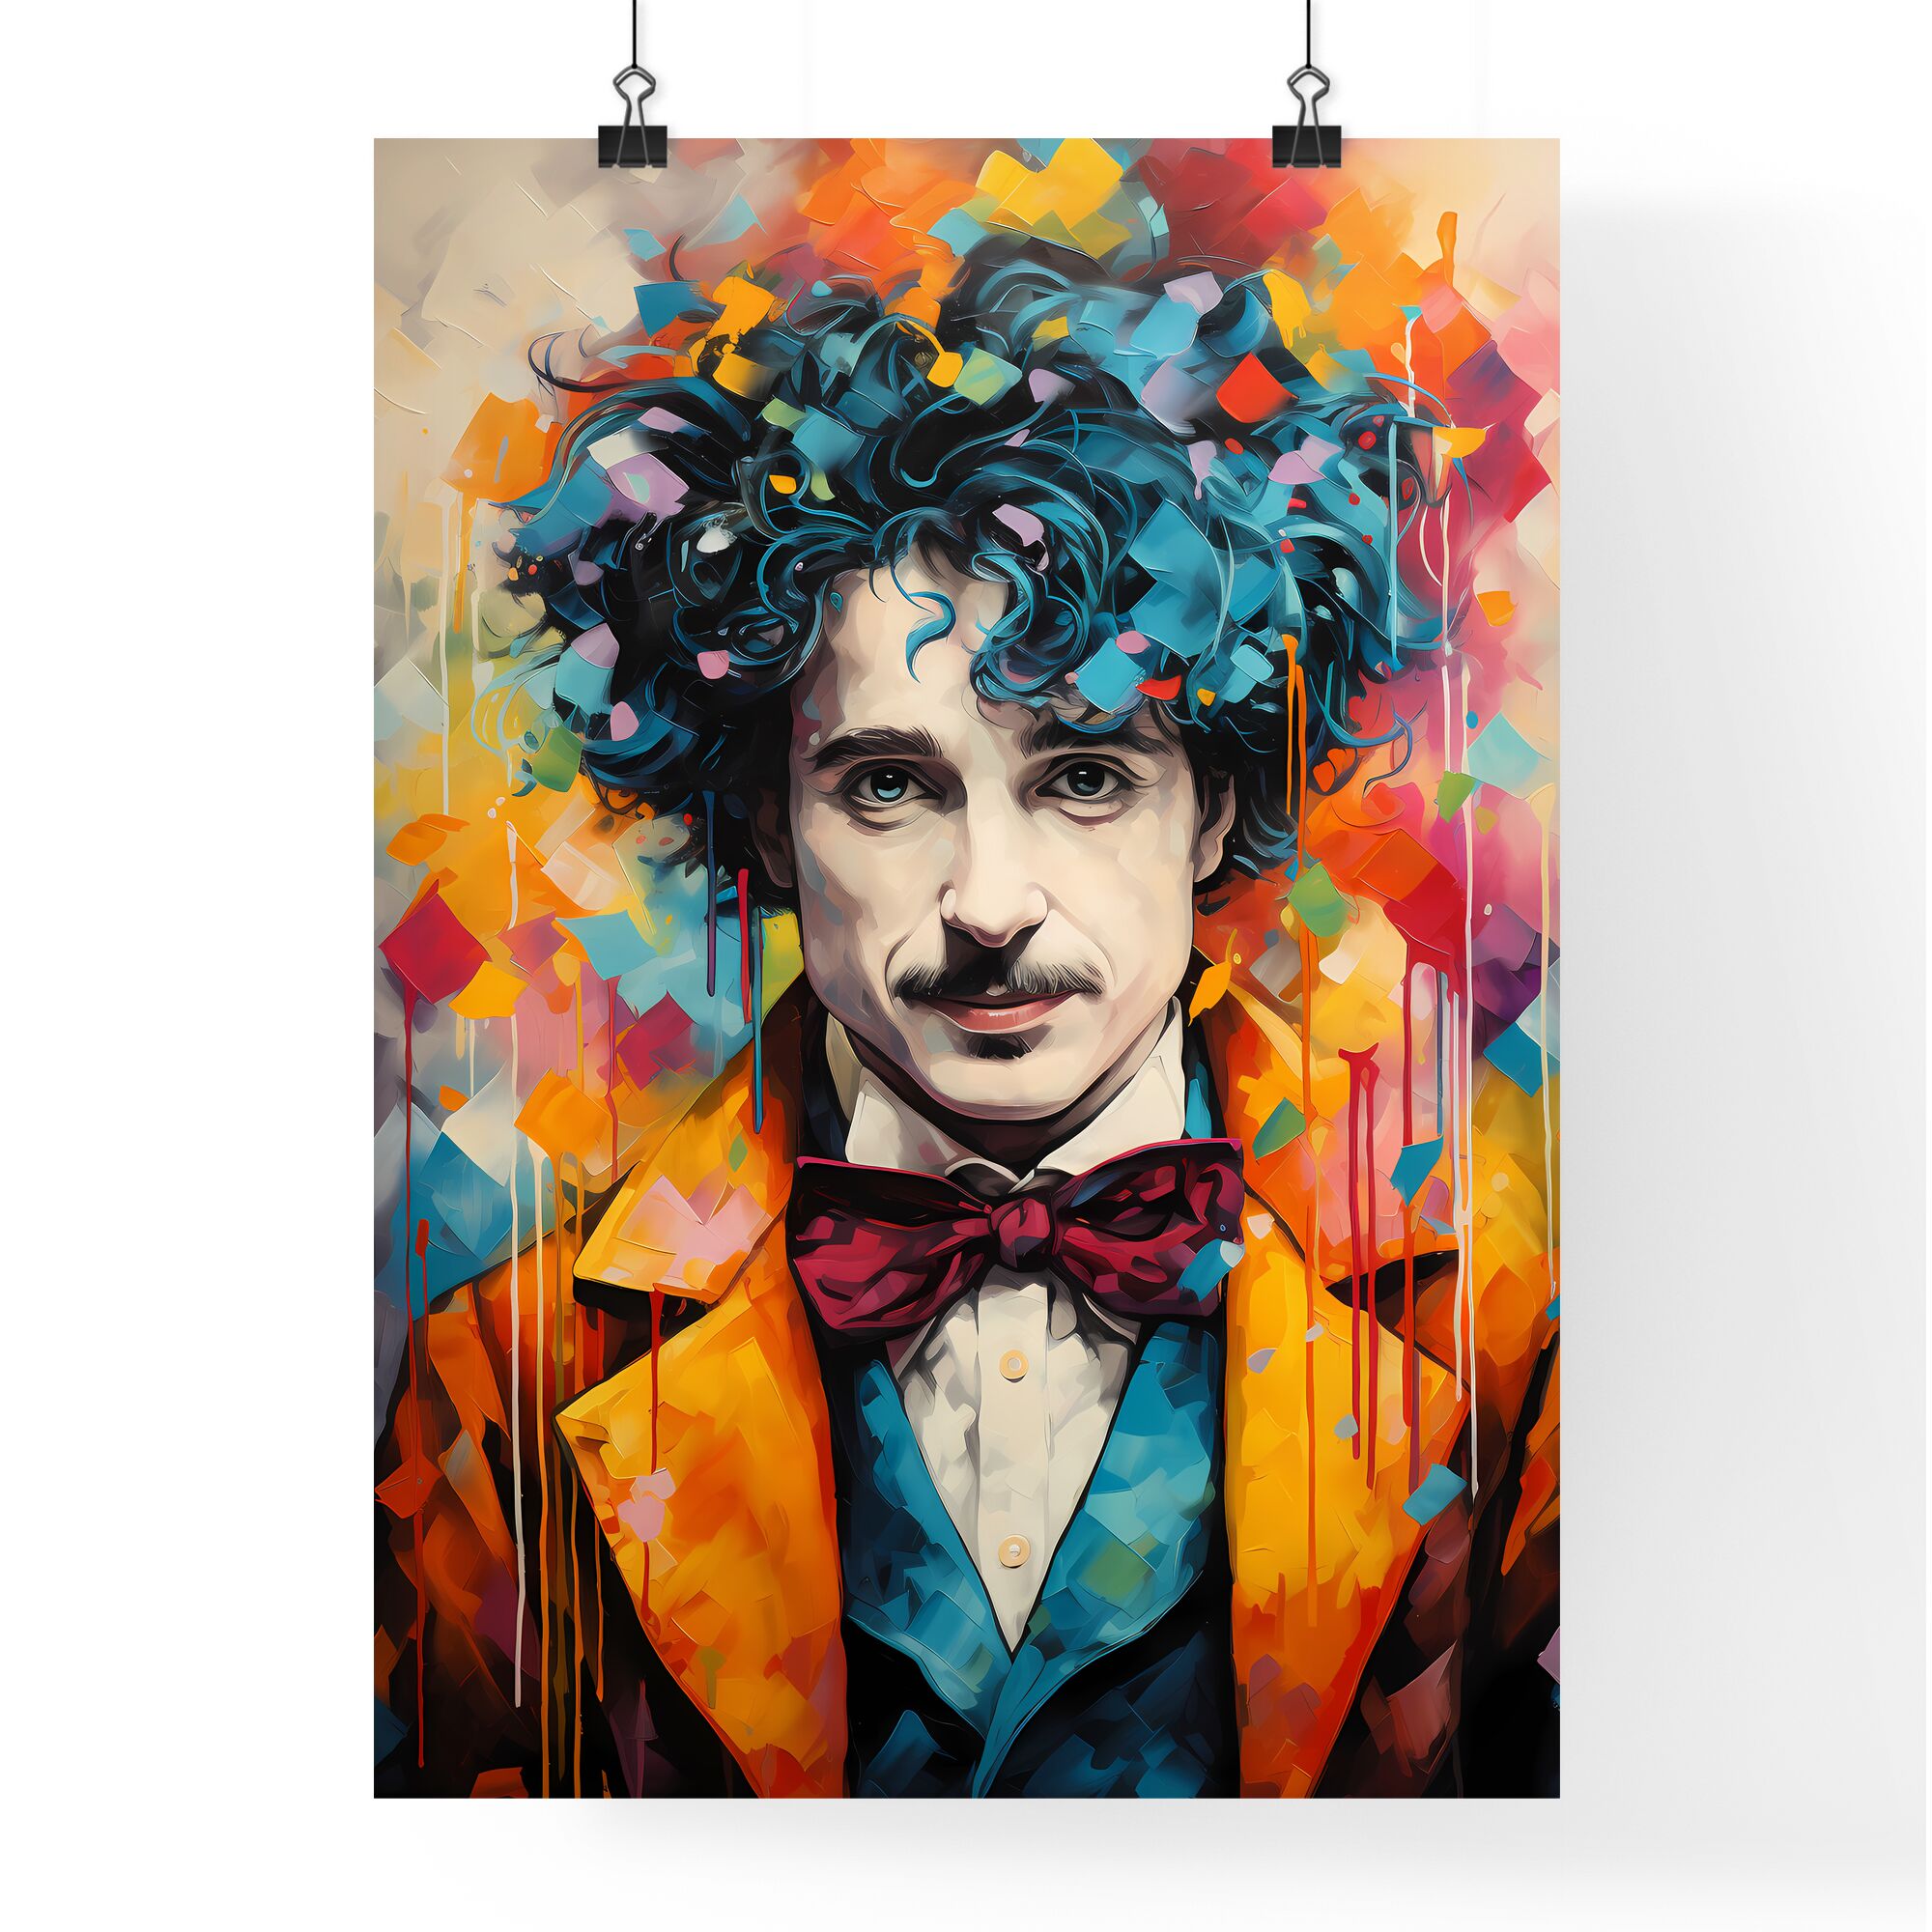 Sir Charlie Chaplin - A Man With Blue Hair And A Bow Tie